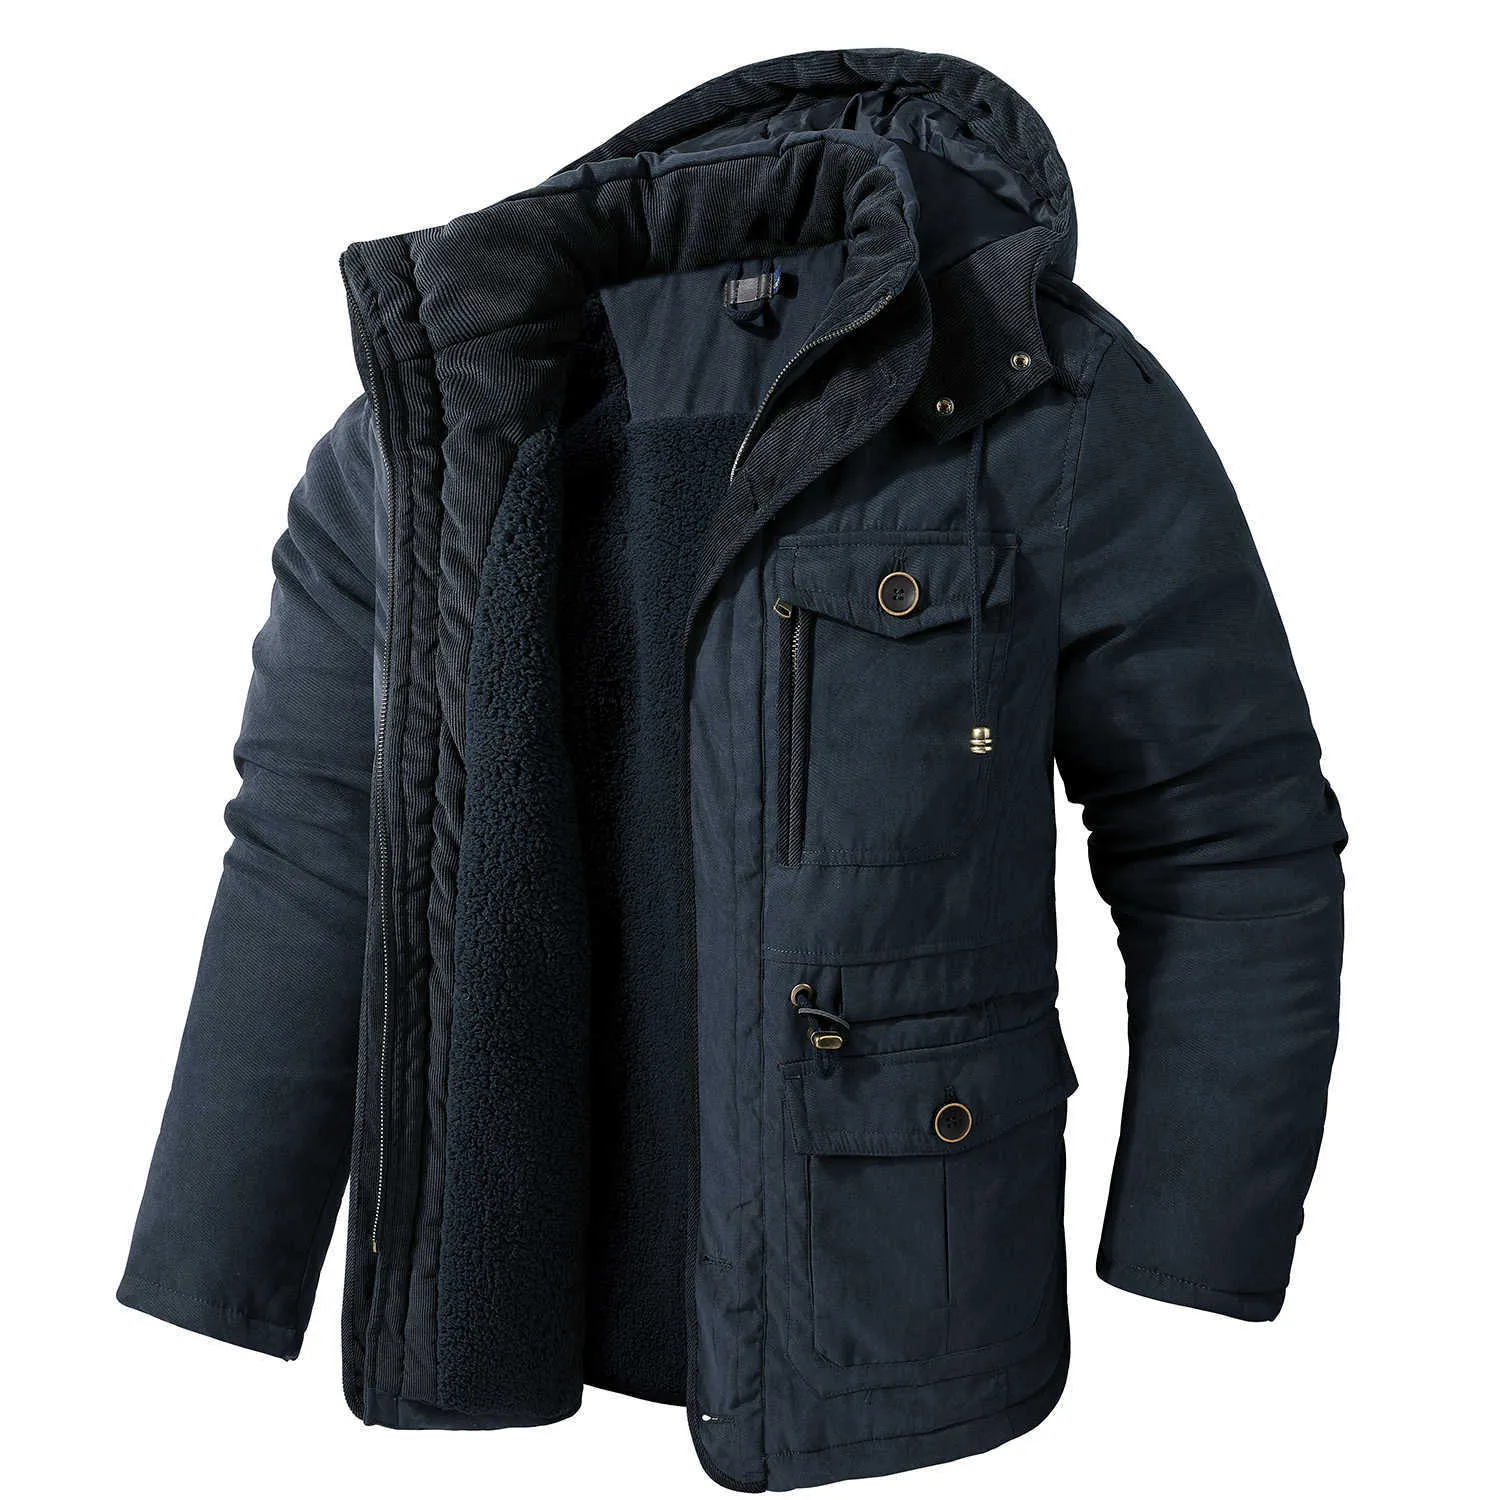 OEIN Winter Thick Jacket Men Cotton Warm Parka Coat Casual Fleece Military Cargo Jackets Male Windbreaker Overcoats Men 211104